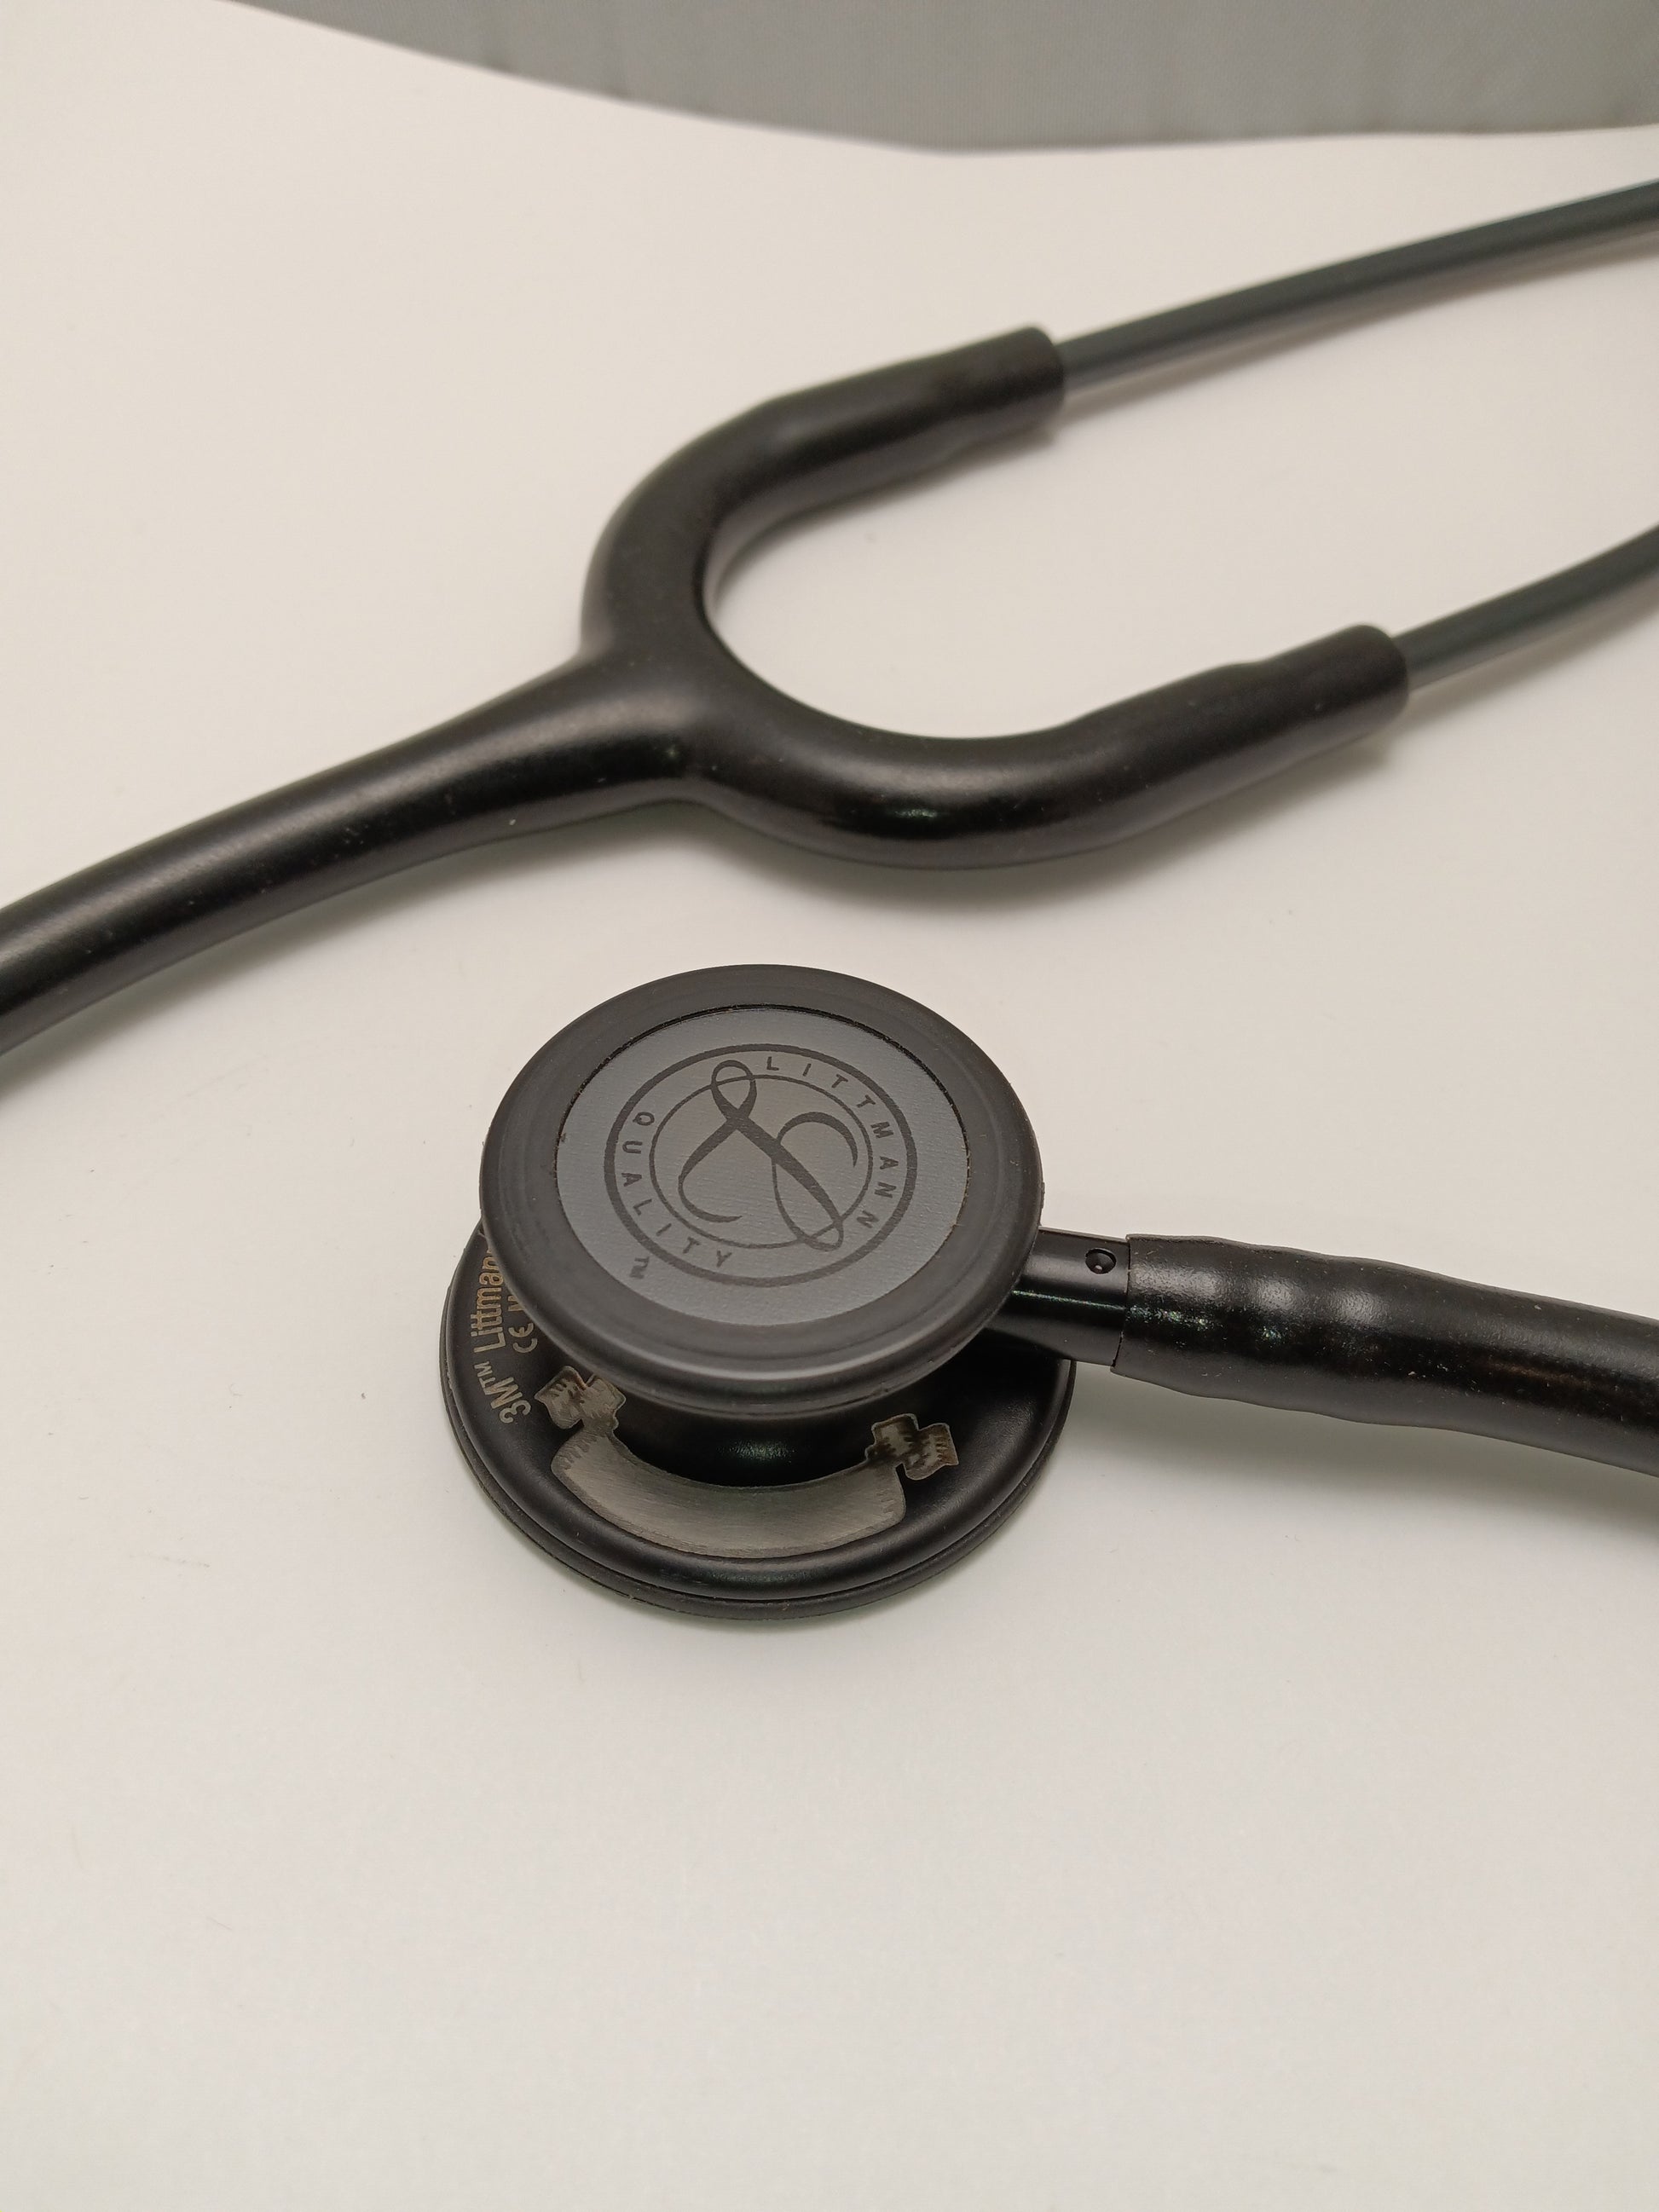 Littmann Cardiology IV Diagnostic Stethoscope: Black & Black - Blue Stem 6201 - Over Engraved Stethoscopes 3M Littmann   